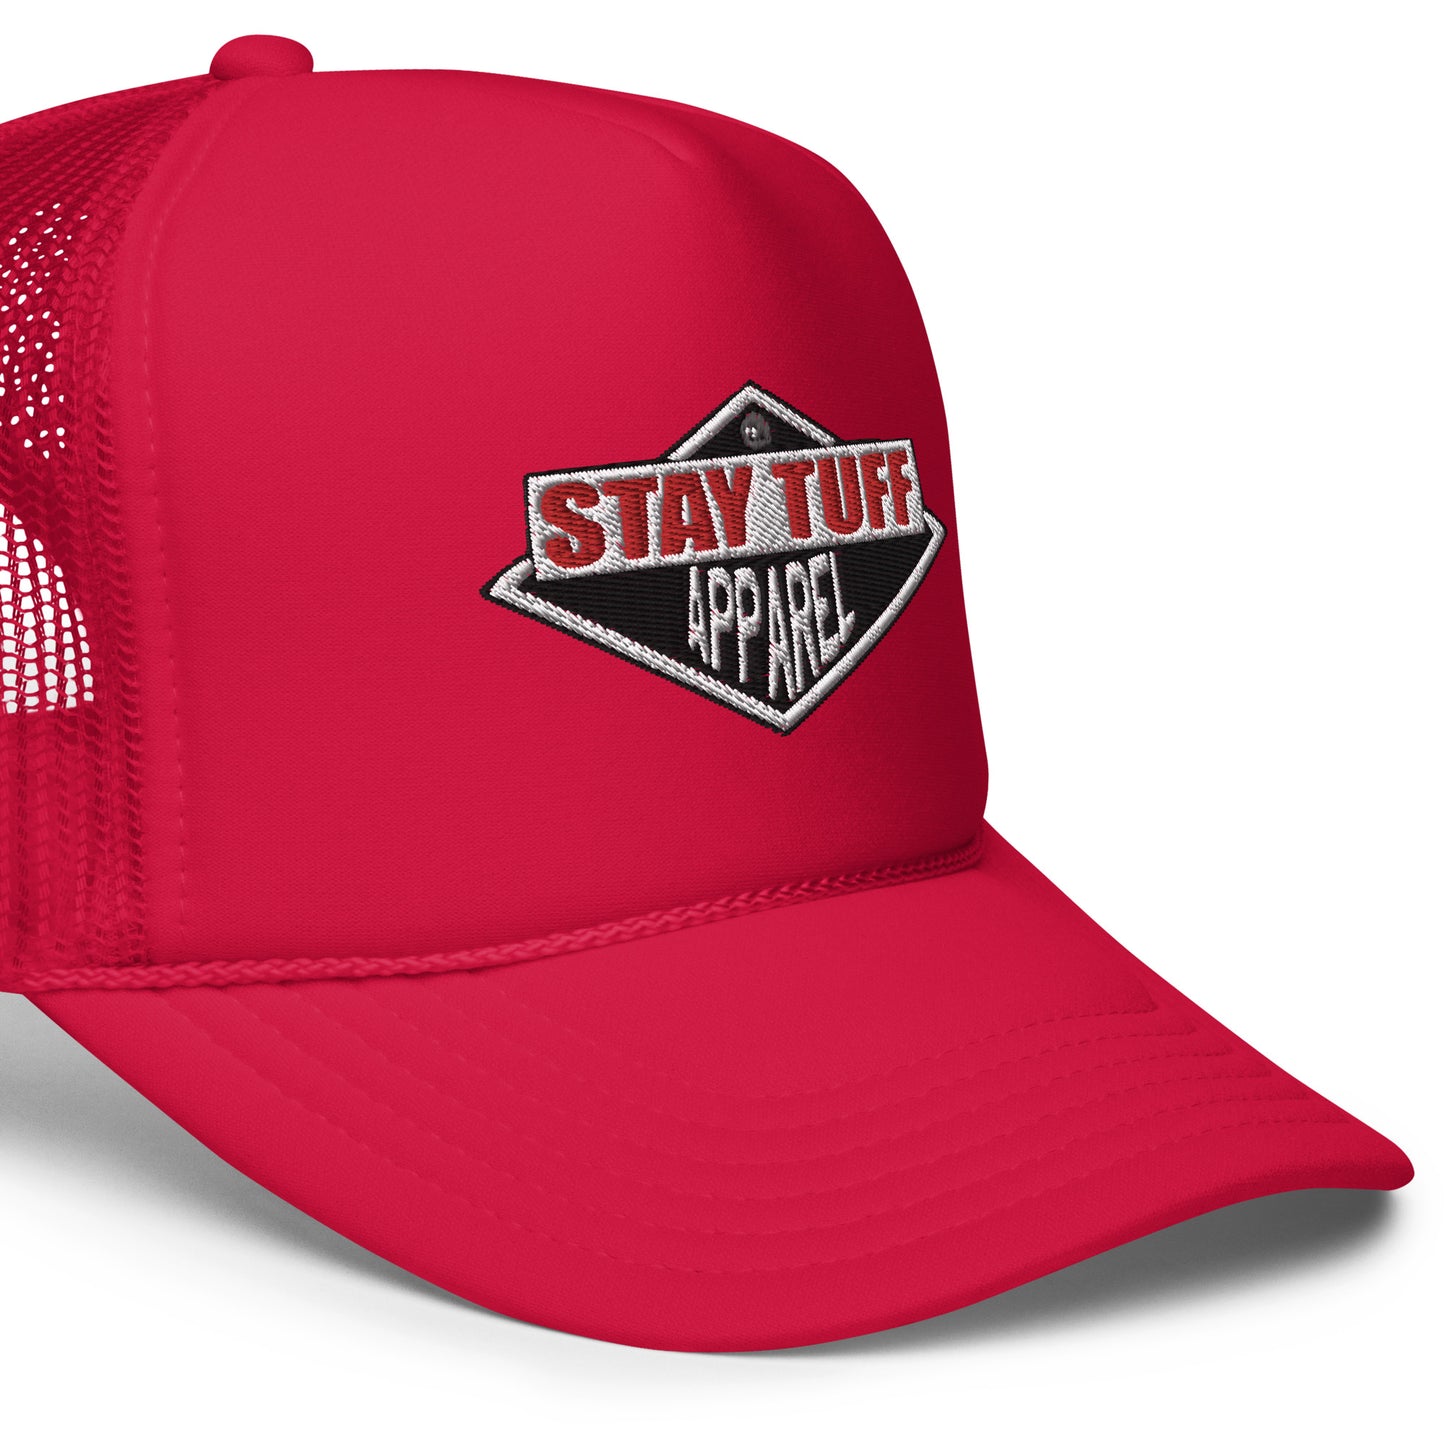 THE NEW STYLE (Foam Trucker Hat)